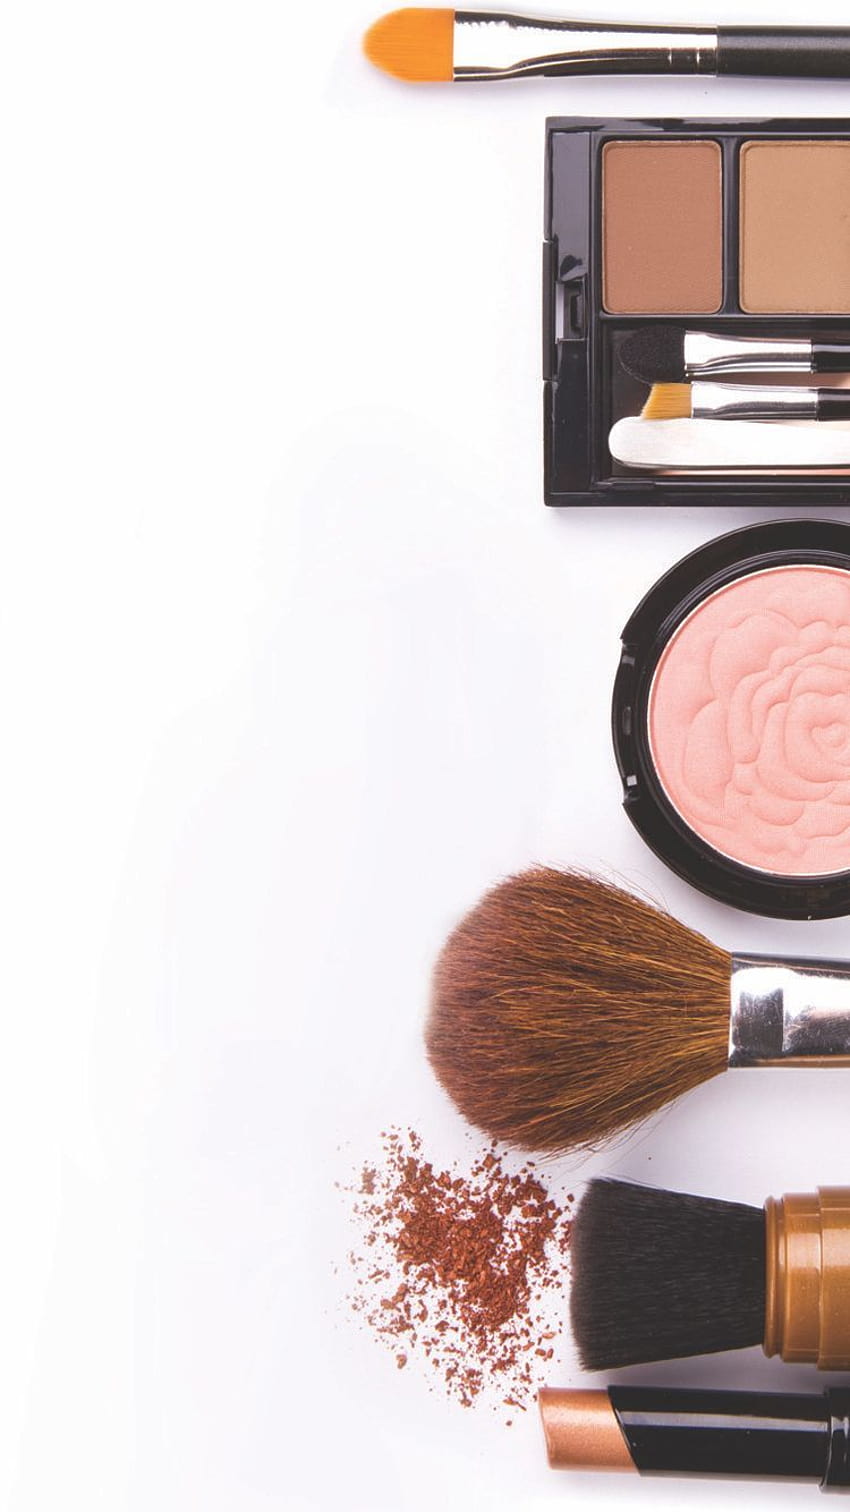 Makeup iPhone, makeup kit HD phone wallpaper